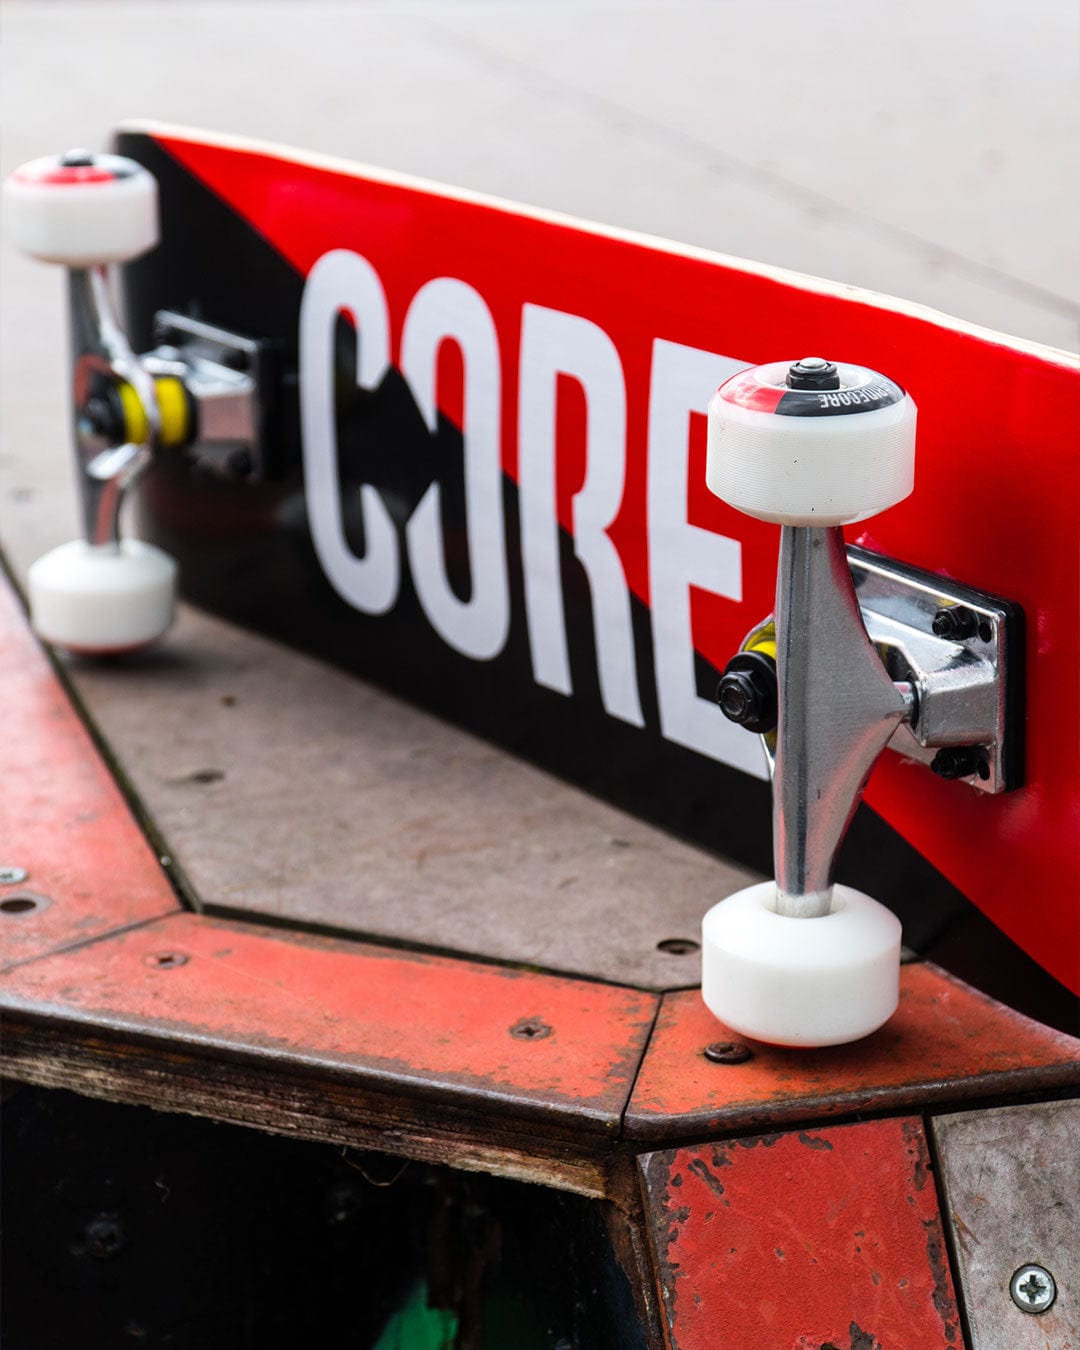 CORE Complete Skateboard Red Splat C2 I Complete Skateboard On Side